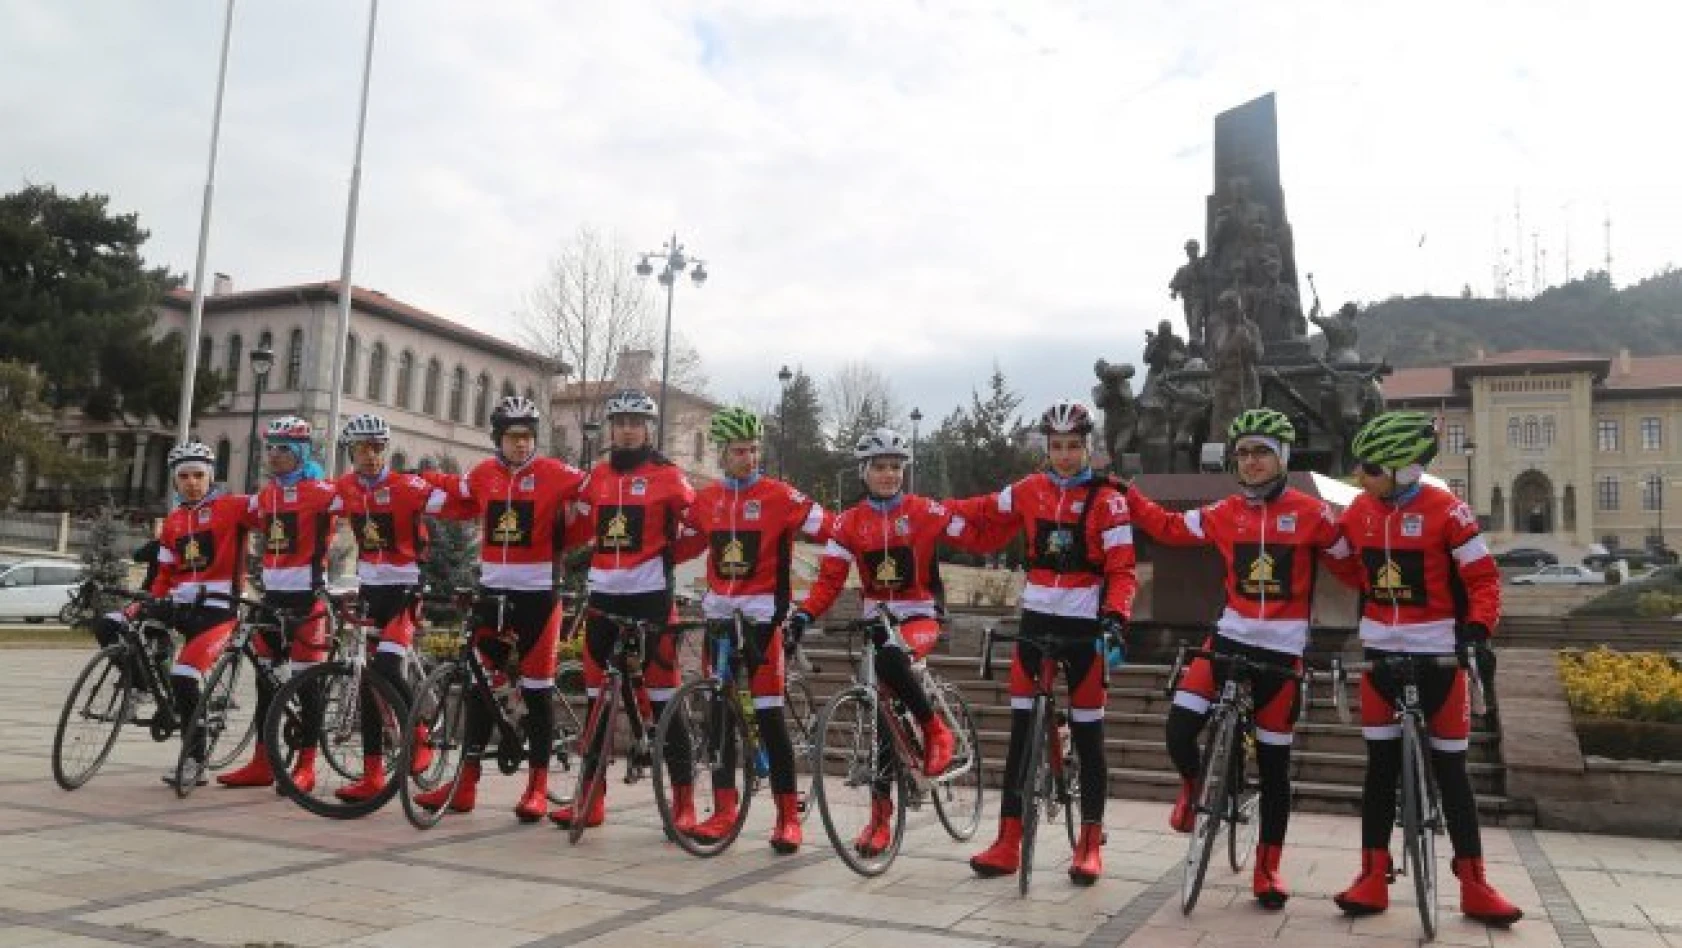 635 kilometrelik bisiklet etkinliği Kastamonu'dan başladı